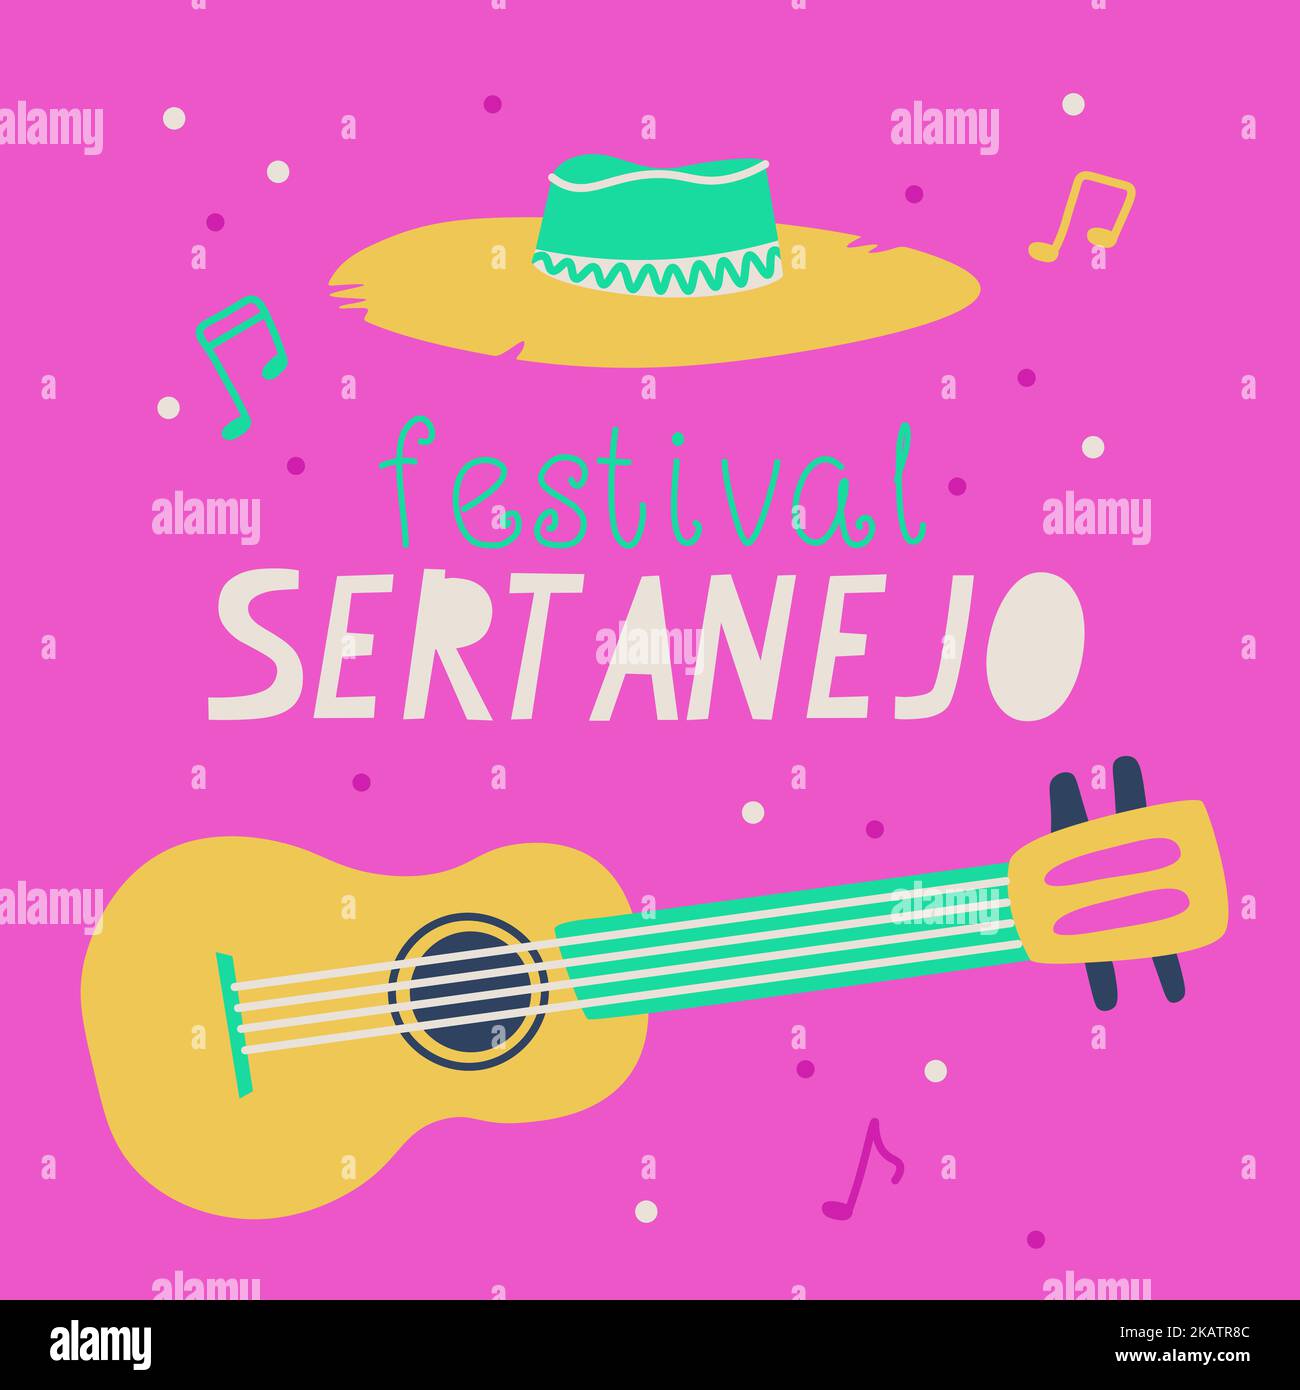 Sertanejo music festival banner. Vector illustration. Stock Vector